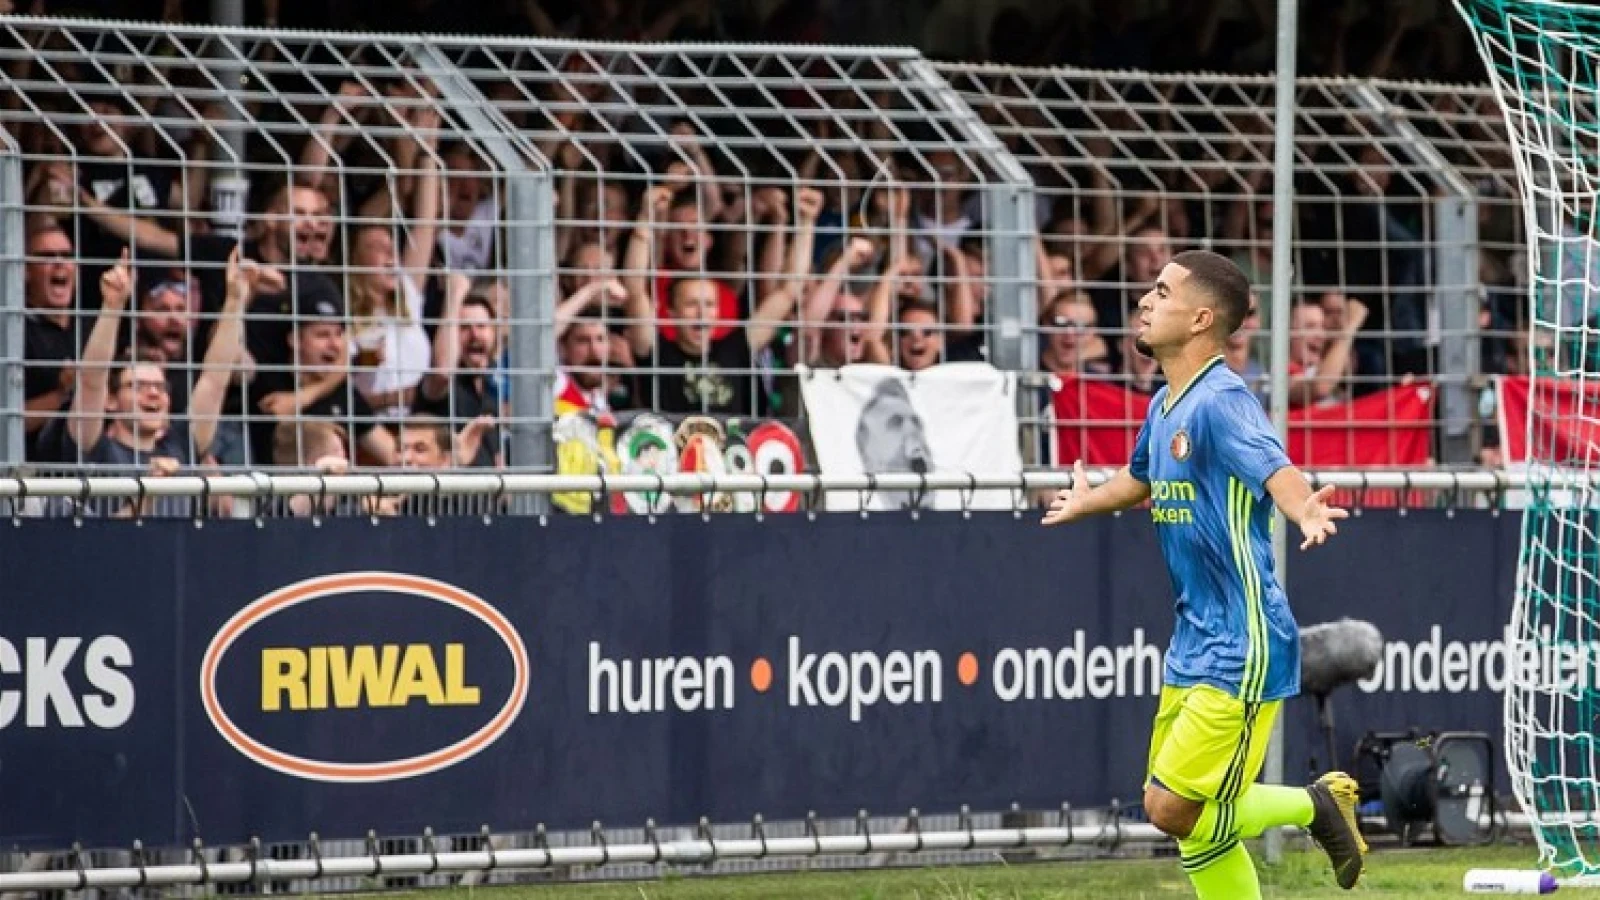 Azarkan matchwinner bij winnend Feyenoord